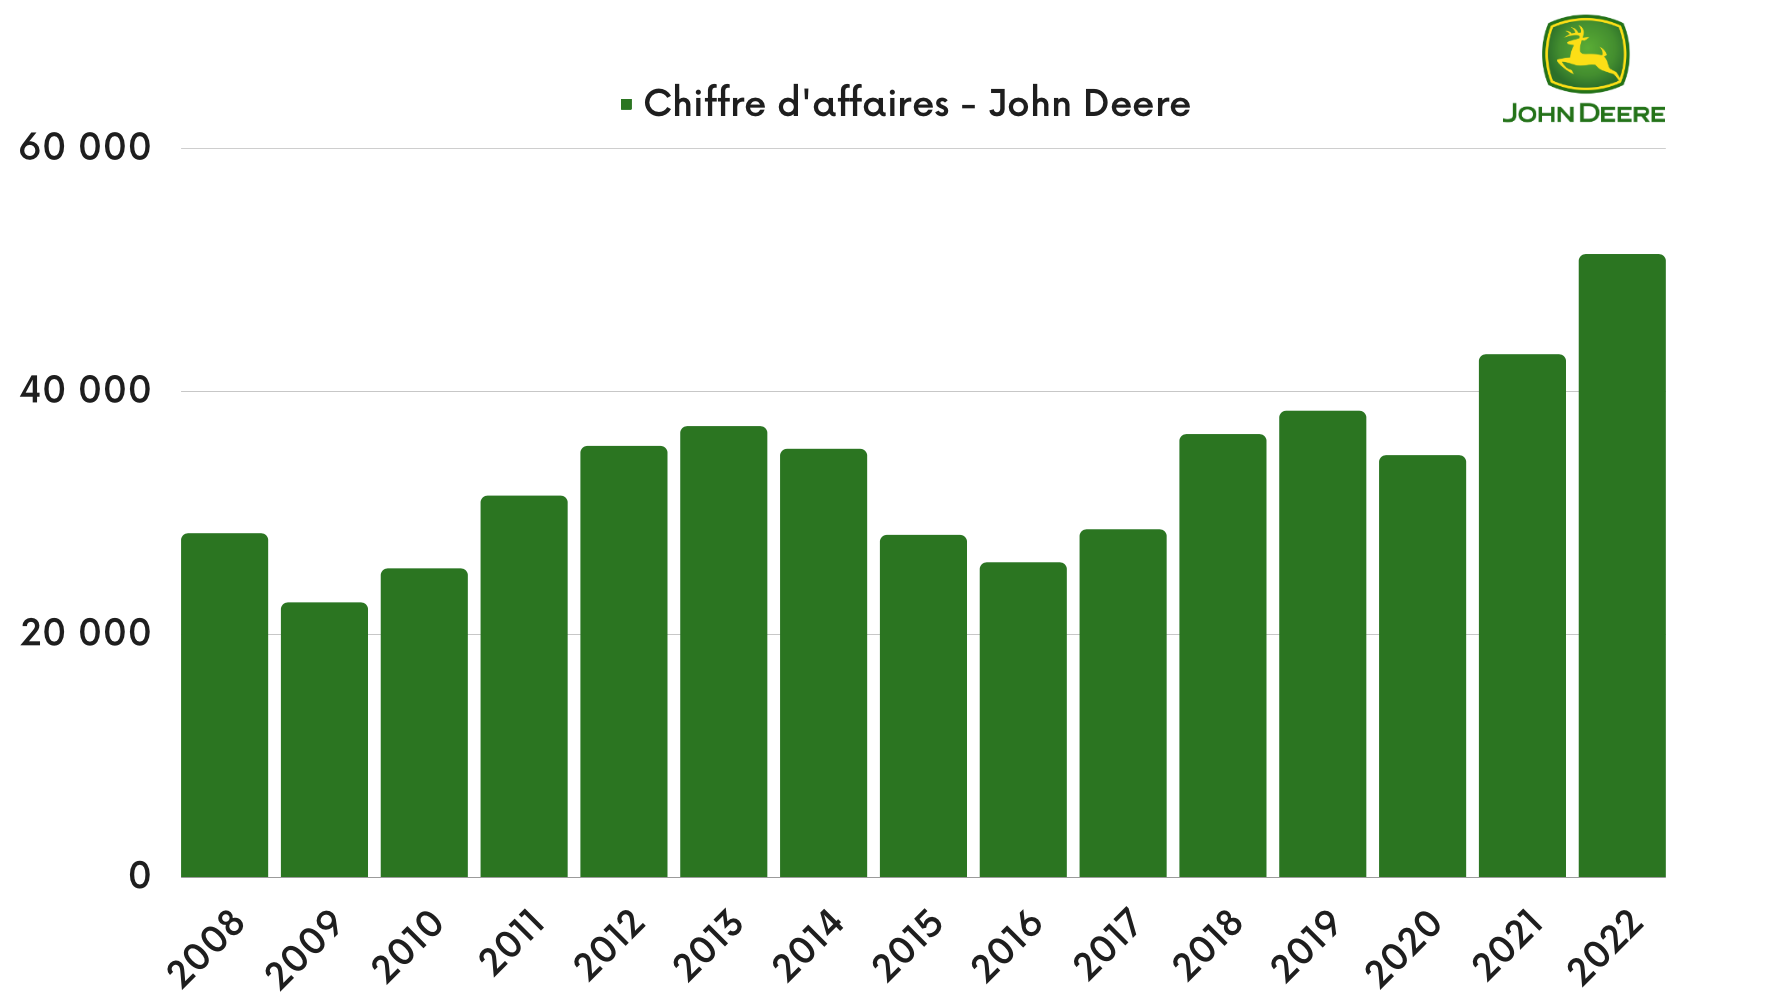 John Deere - Chiffre d'affaires